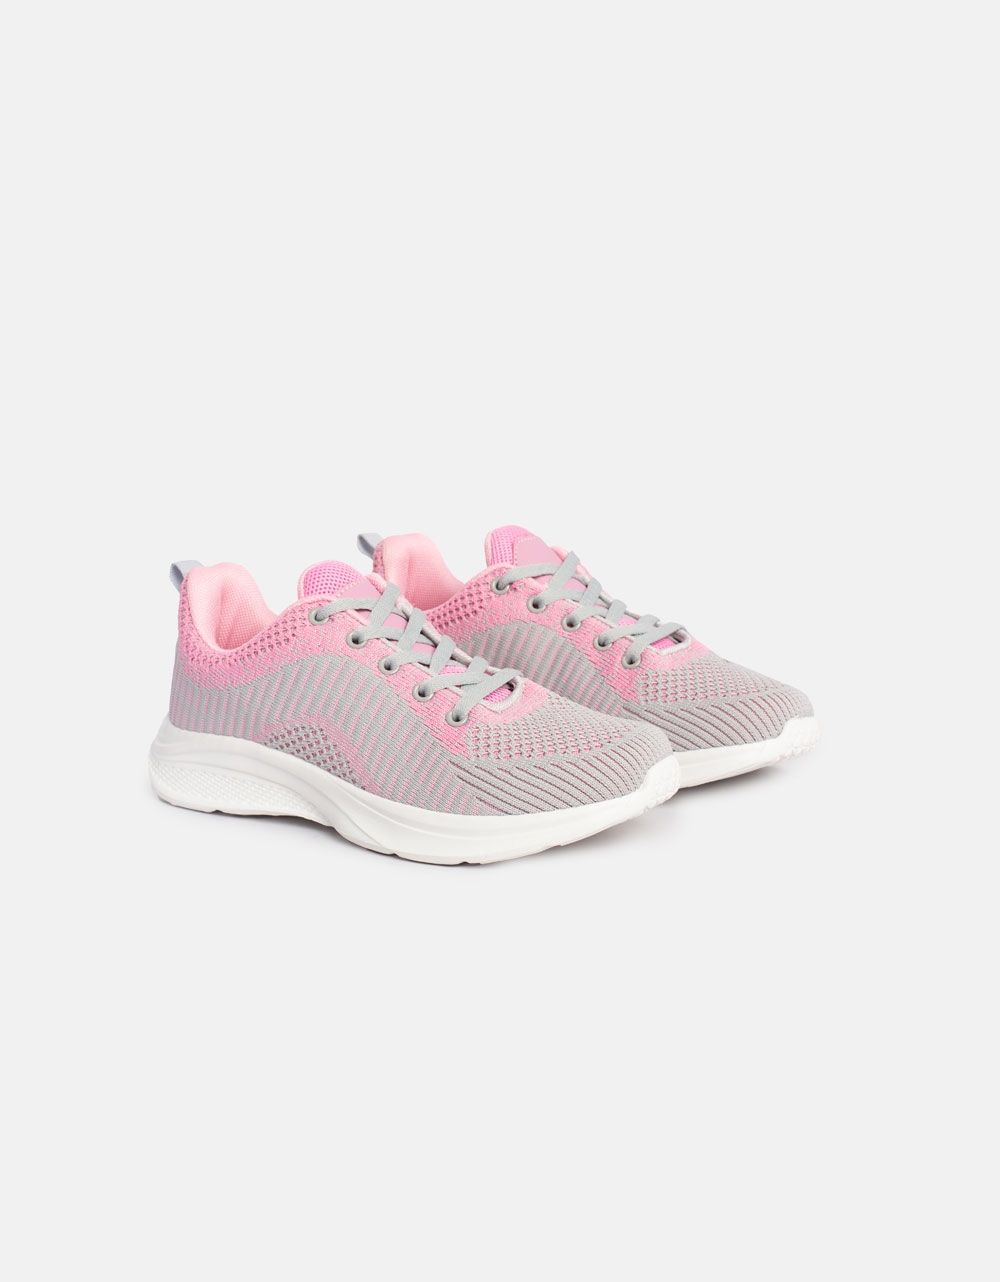 Εικόνα από Γυναικεία sneakers με αθλητική σόλα Γκρι/Ροζ